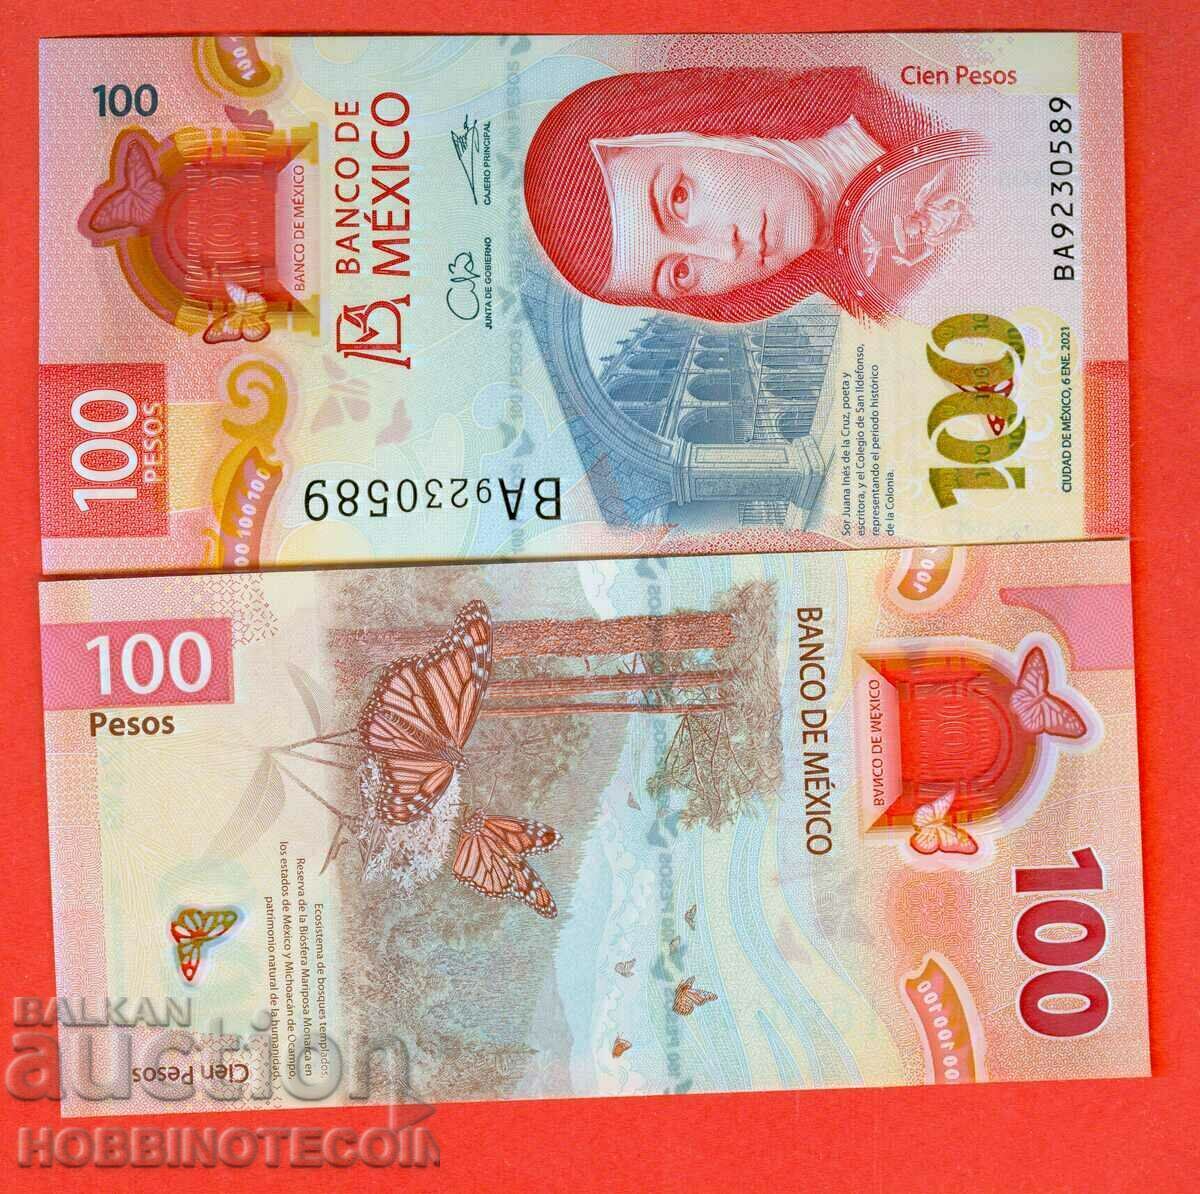 MEXICO MEXICO 100 Peso - έκδοση 2021 NEW UNC POLYMER κάτω από 1